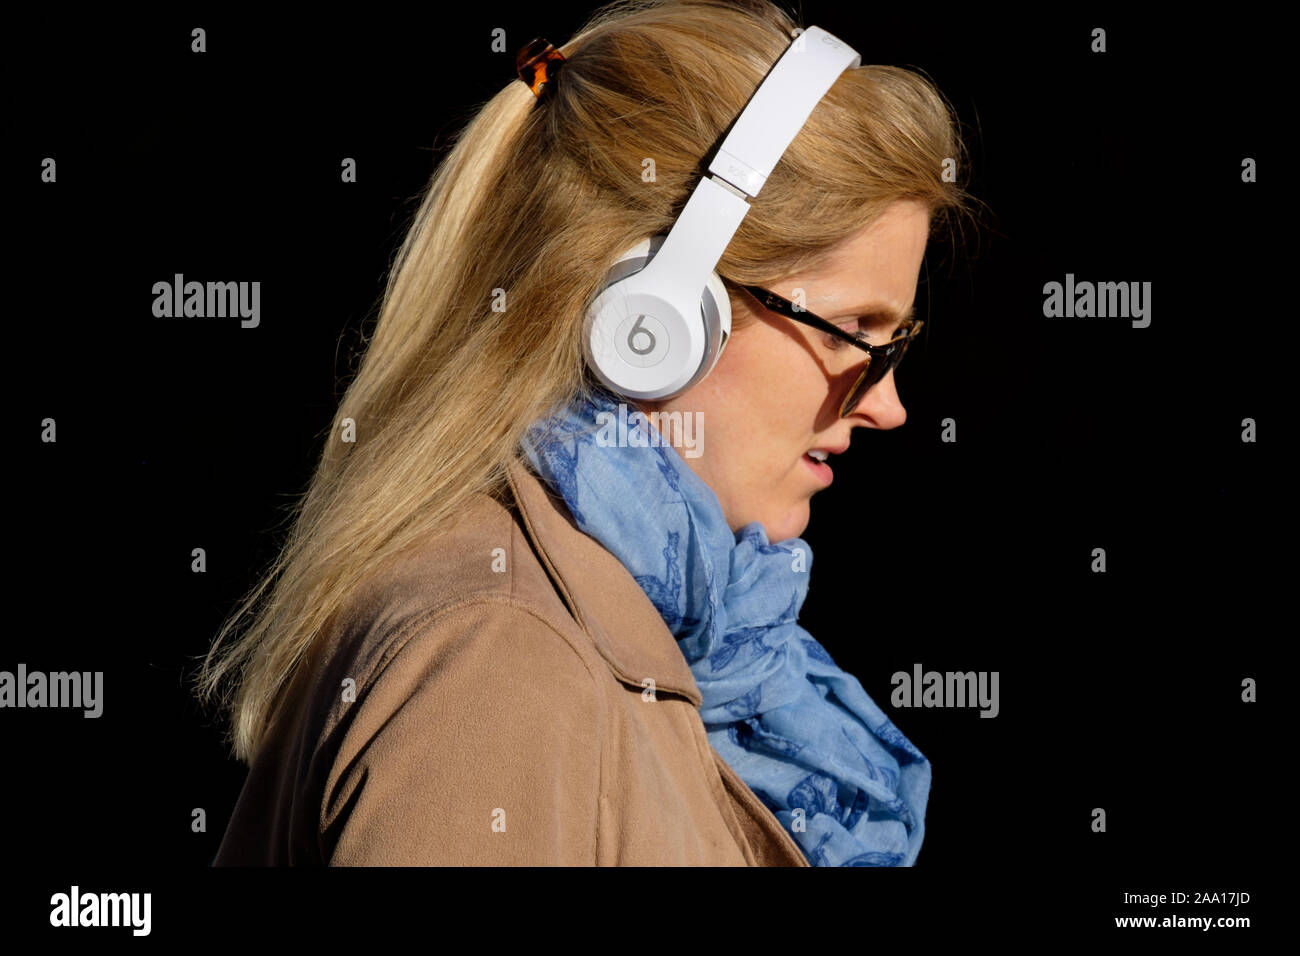 Femme, 20 ans, cheveux blonds, robe élégante et tendance, foulard, écouteurs Beats sur London Street. Banque D'Images